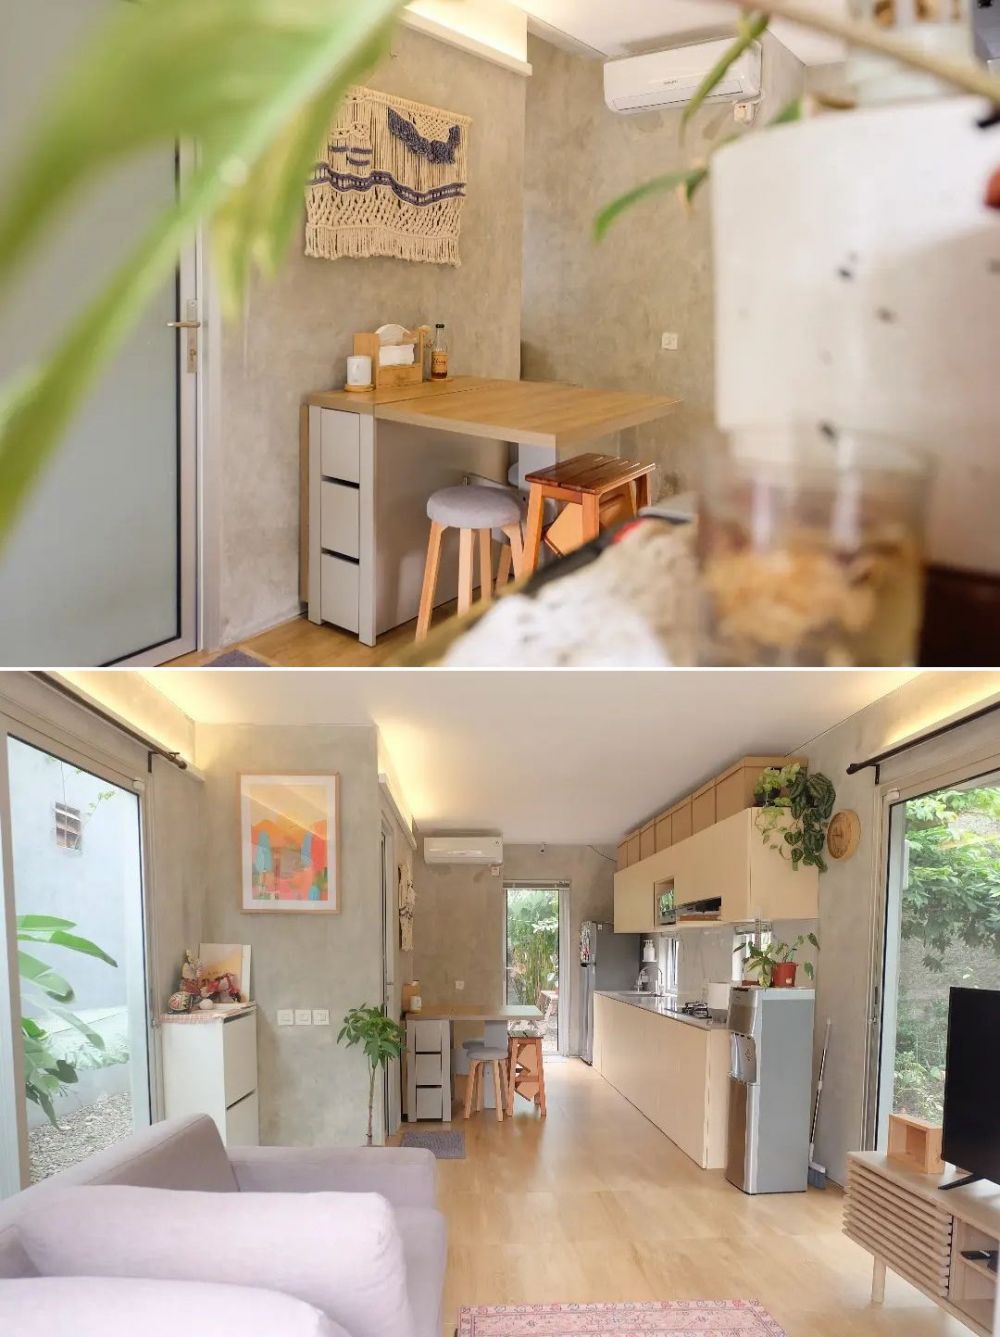 Desain rumah mini berdinding semen, 11 potret interiornya minimalis tapi tetap compact